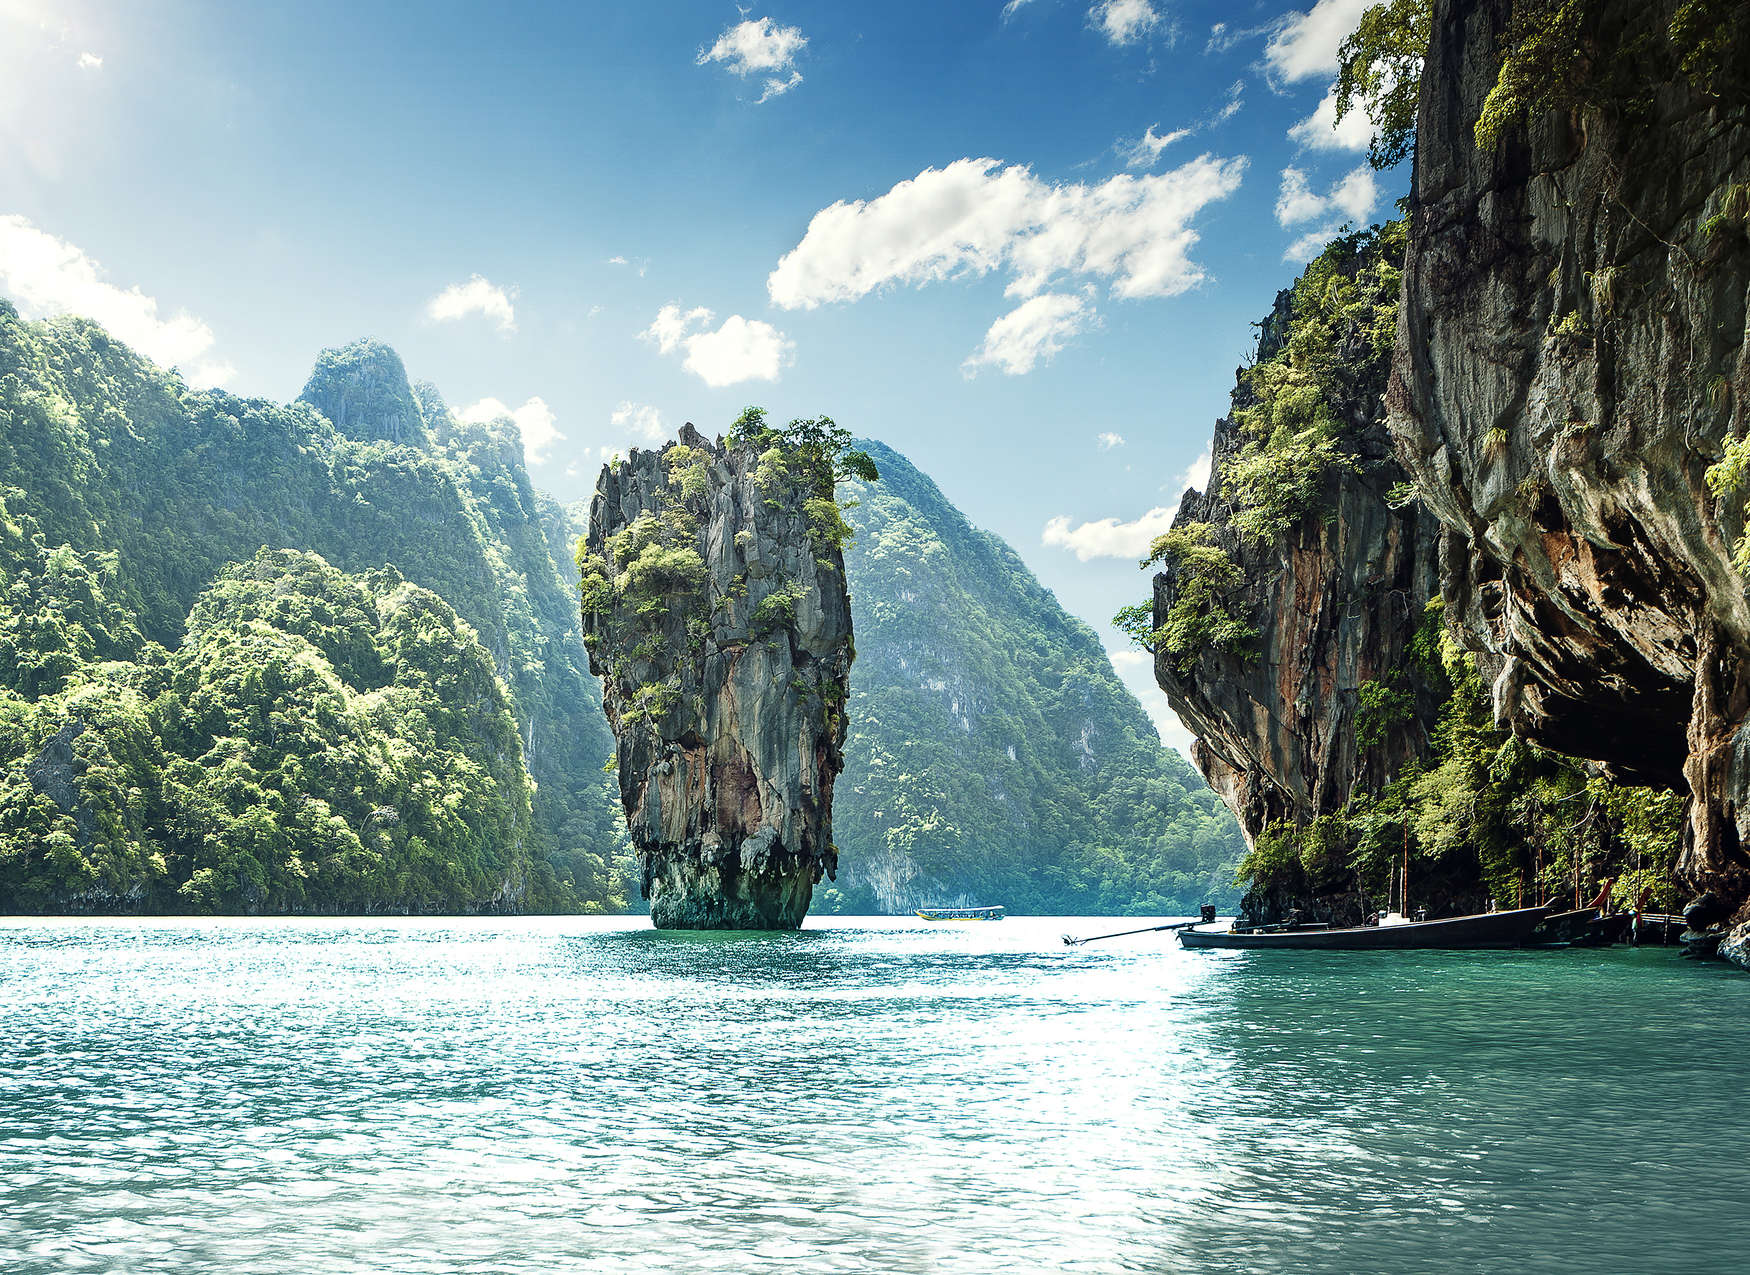             Fototapete mit paradiesischer Aussicht auf Berglandschaft in Thailand – Blau, Grün, Weiß
        